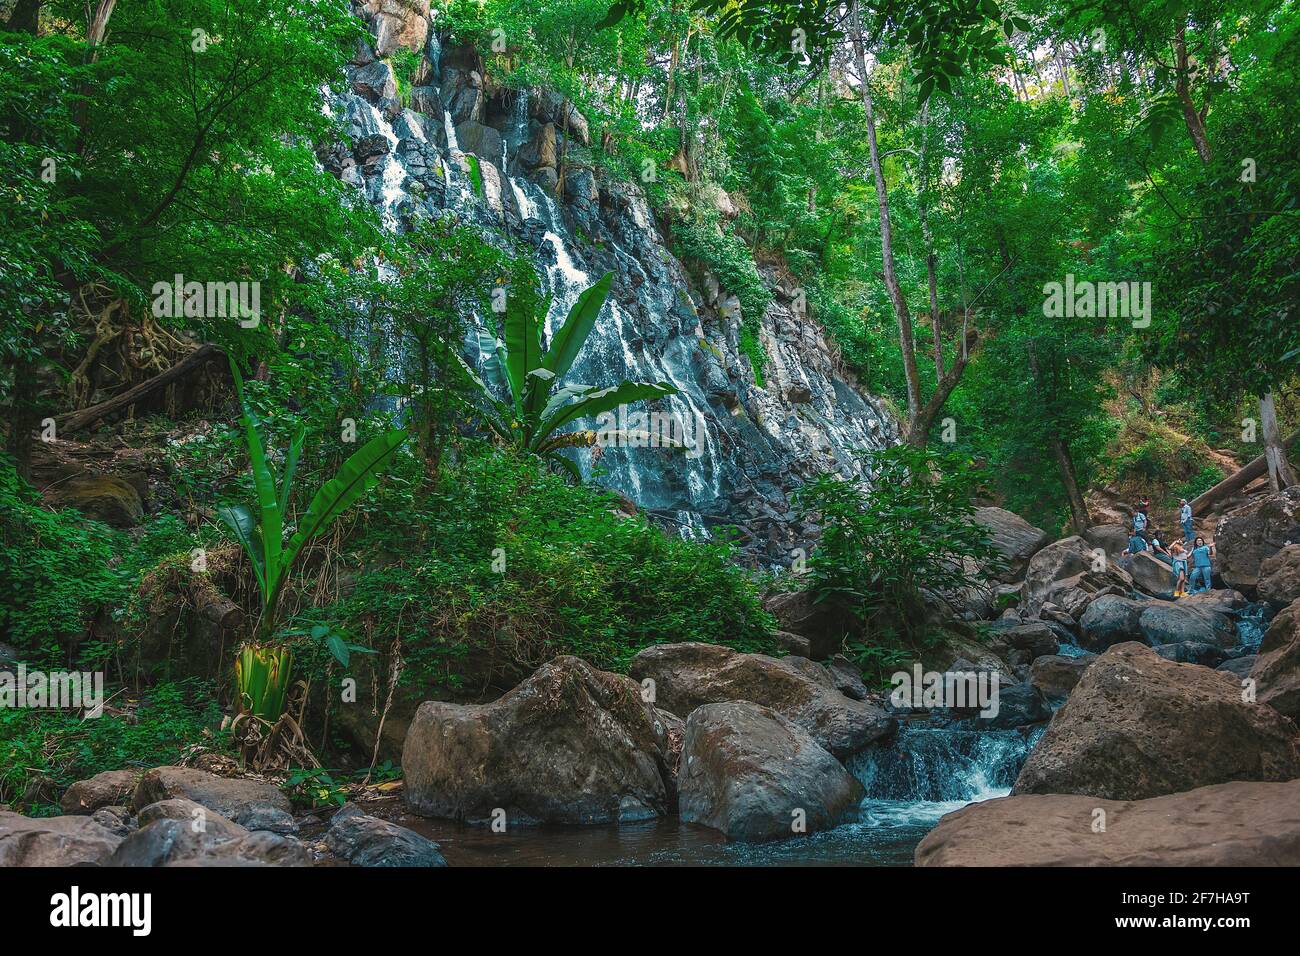 México, Valle de Bravo, Vista panorámica de la hermosa cascada natural 'Velo de Novia' rodeada de vegetación y grandes piedras Foto de stock